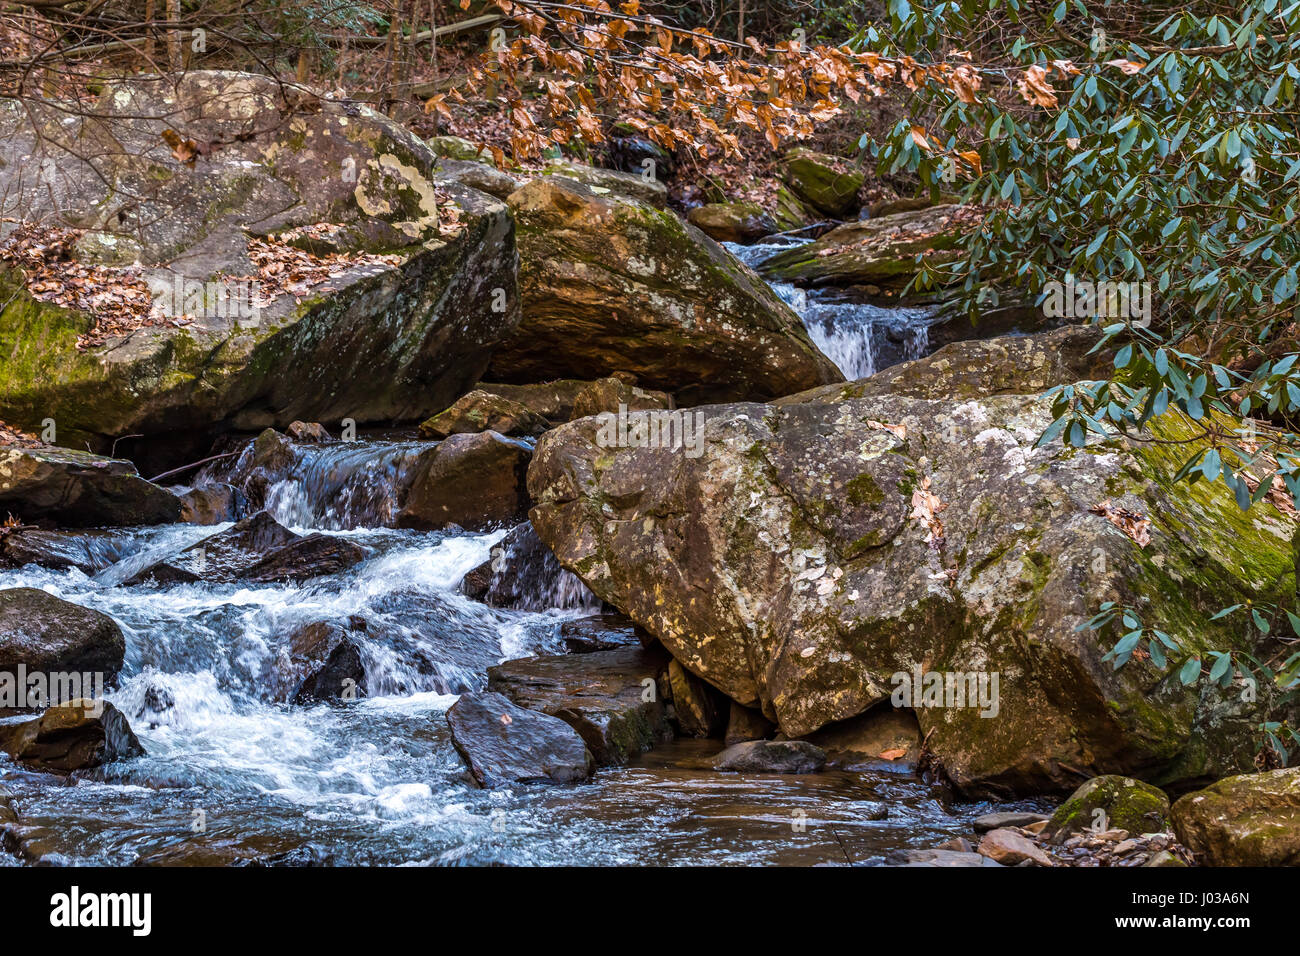 Colt Creek vicino a Saluda North Carolina attraversa un percorso ocky a valle. Foto Stock